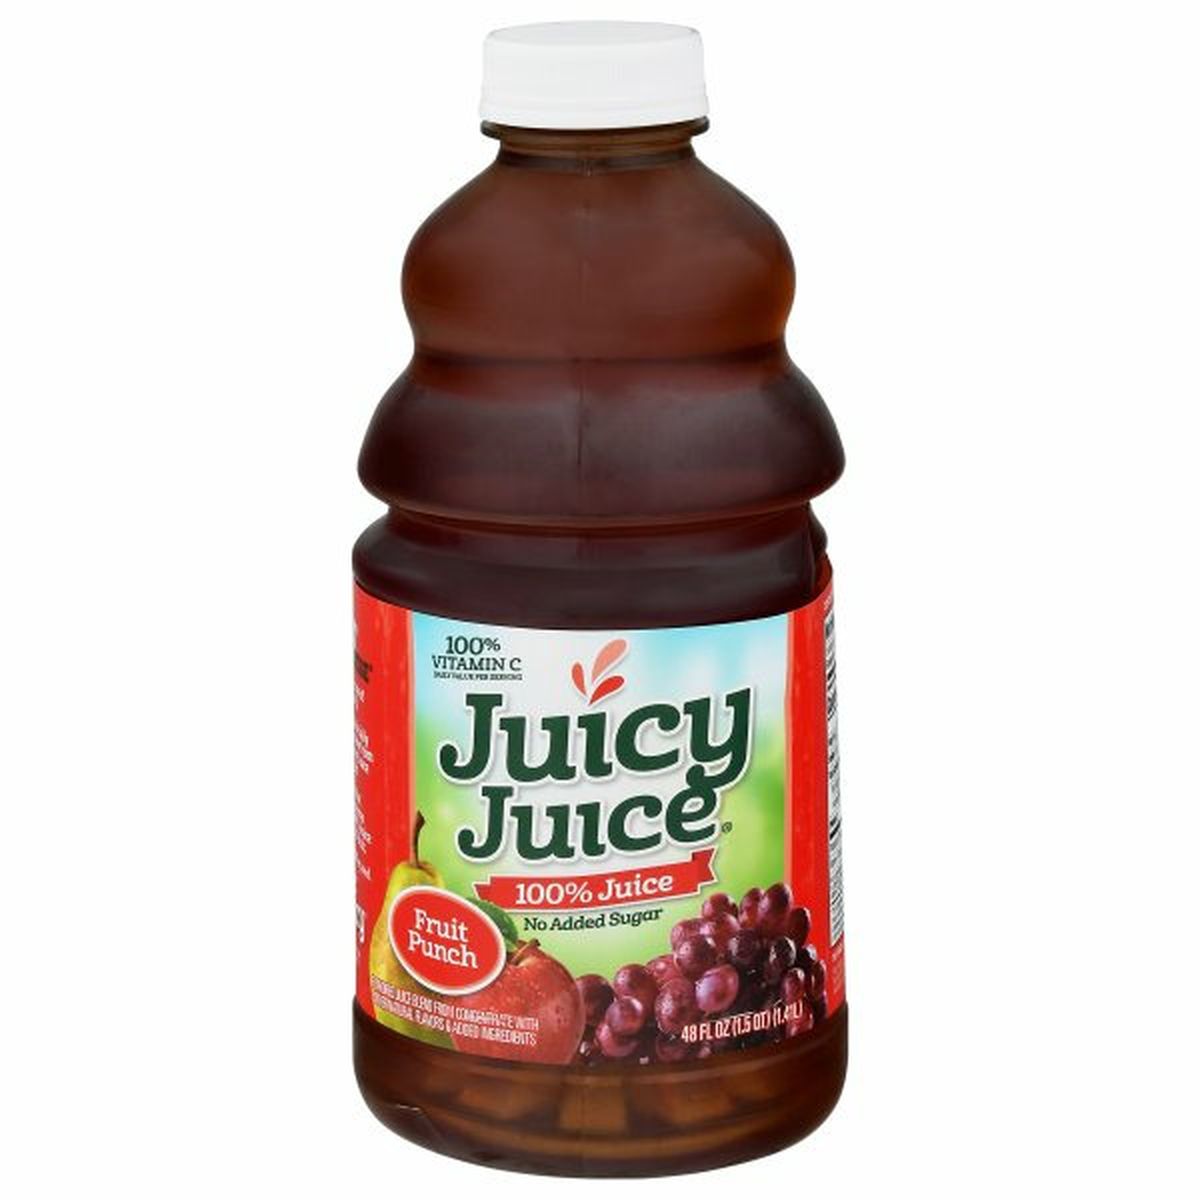 Calories in Juicy Juice 100% Juice, Fruit Punch